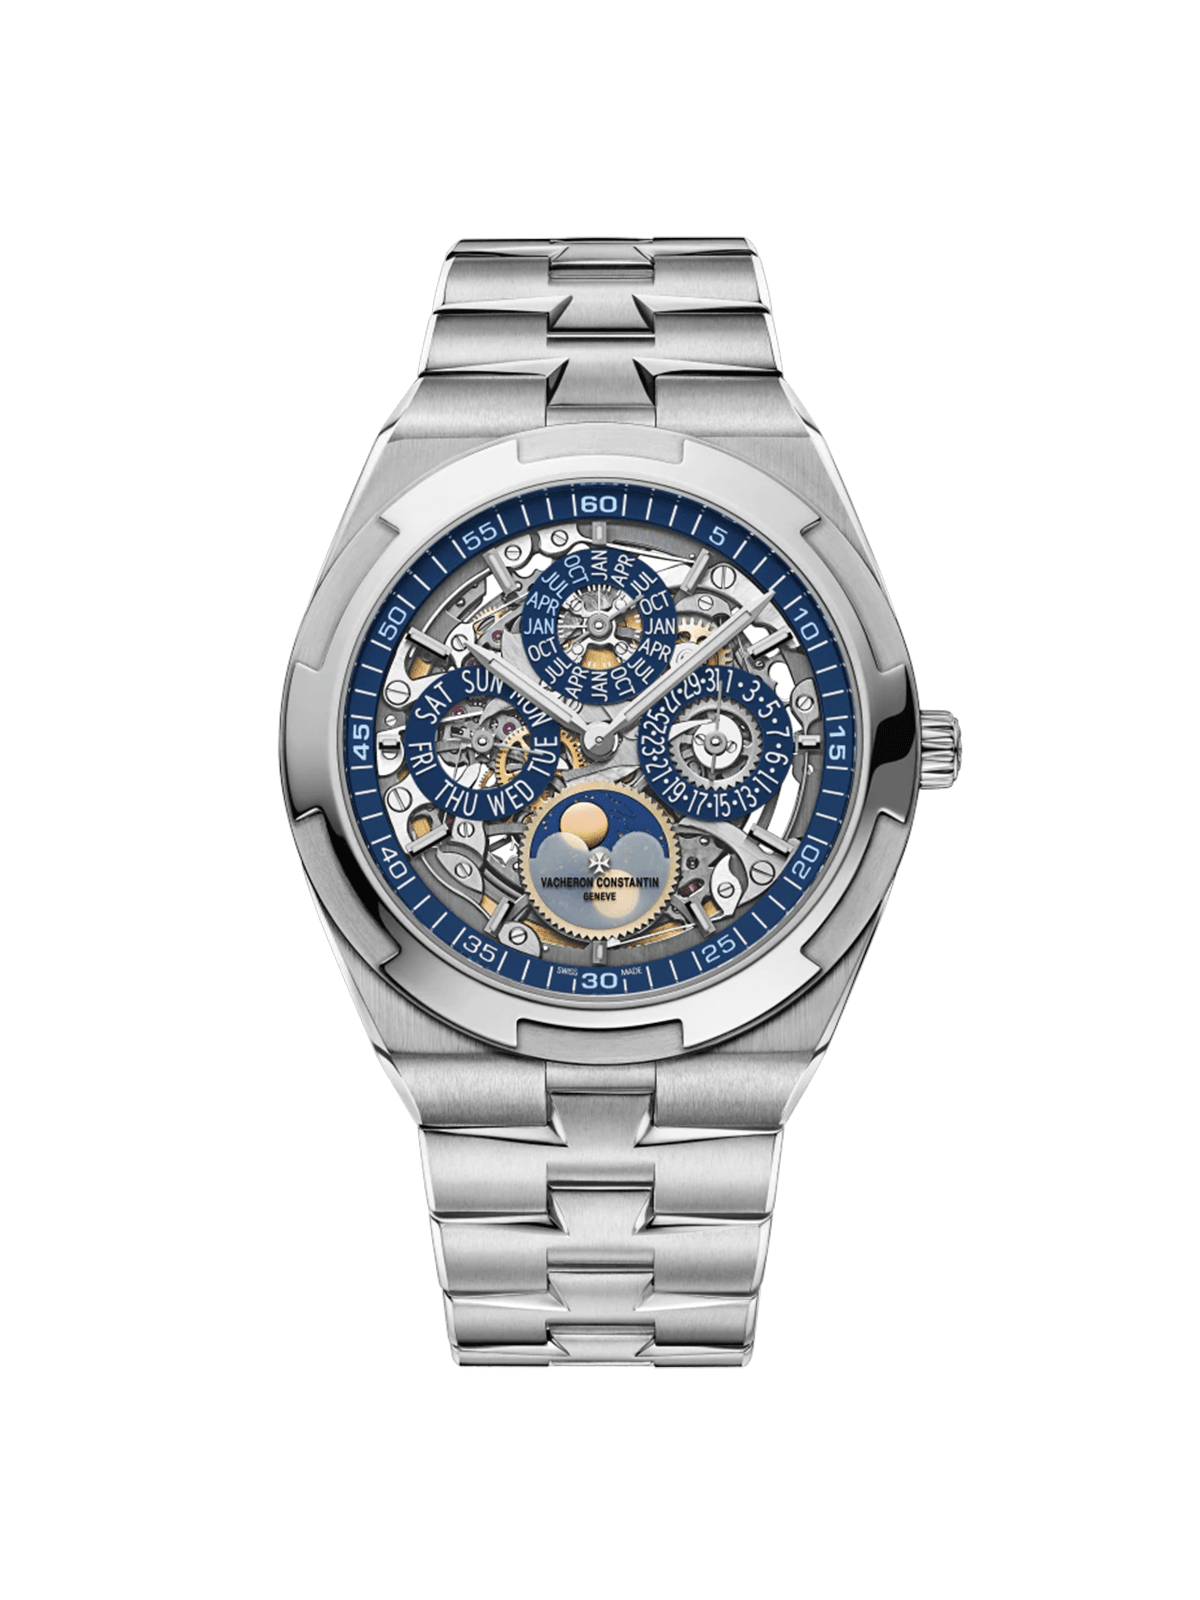 Overseas Perpetual Calendar Ultra-Thin Skeleton 4300V/120G-B946 Watches Vacheron Constantin 